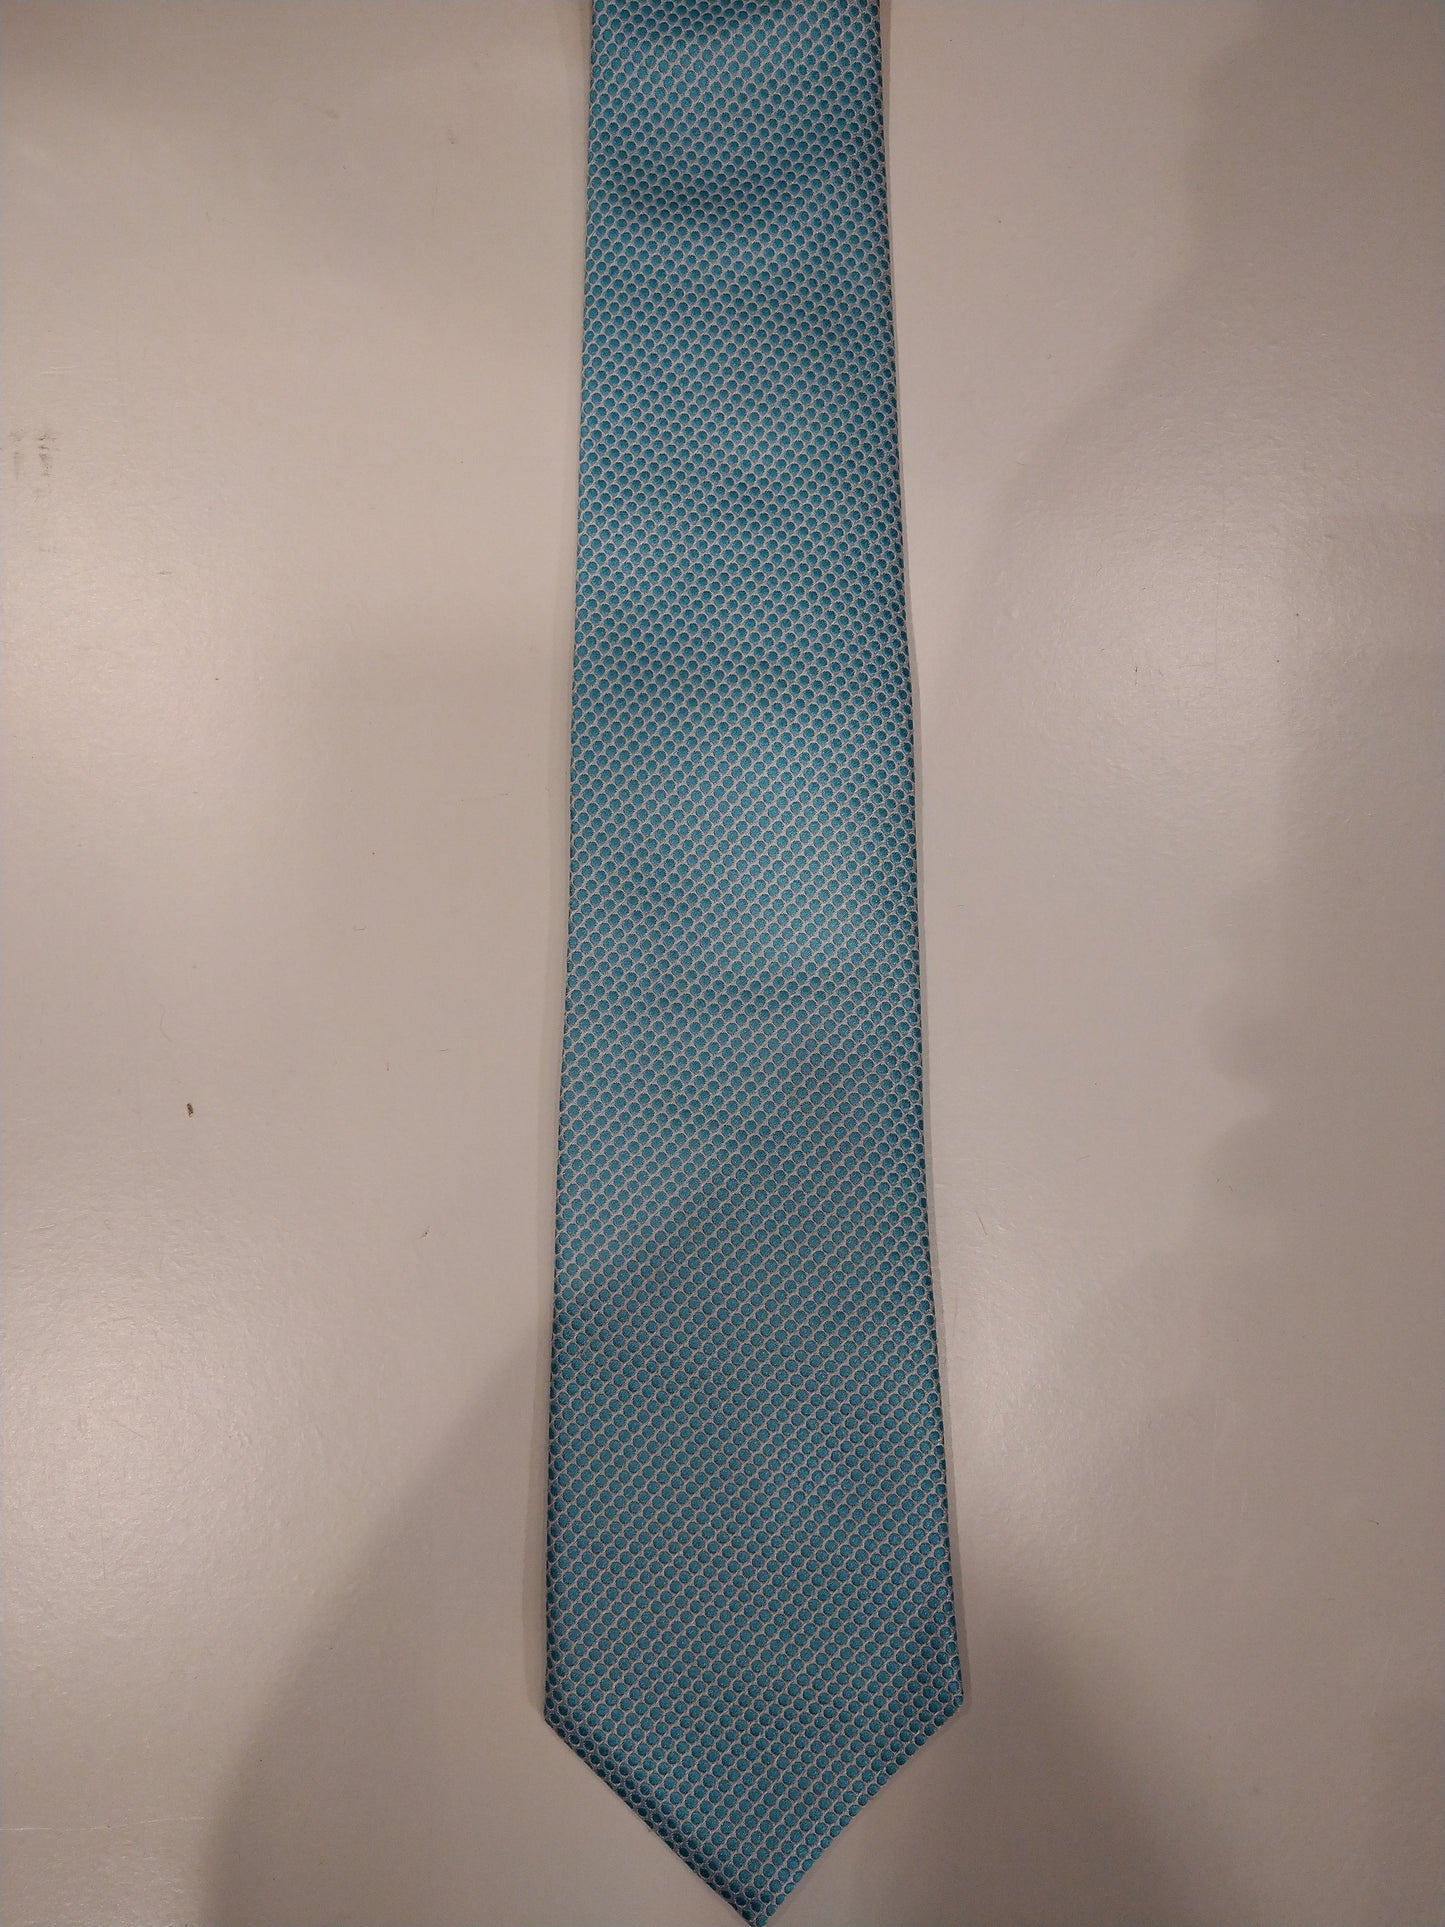 Profuomo zijde stropdas. Blauw wit bolletjes motief.